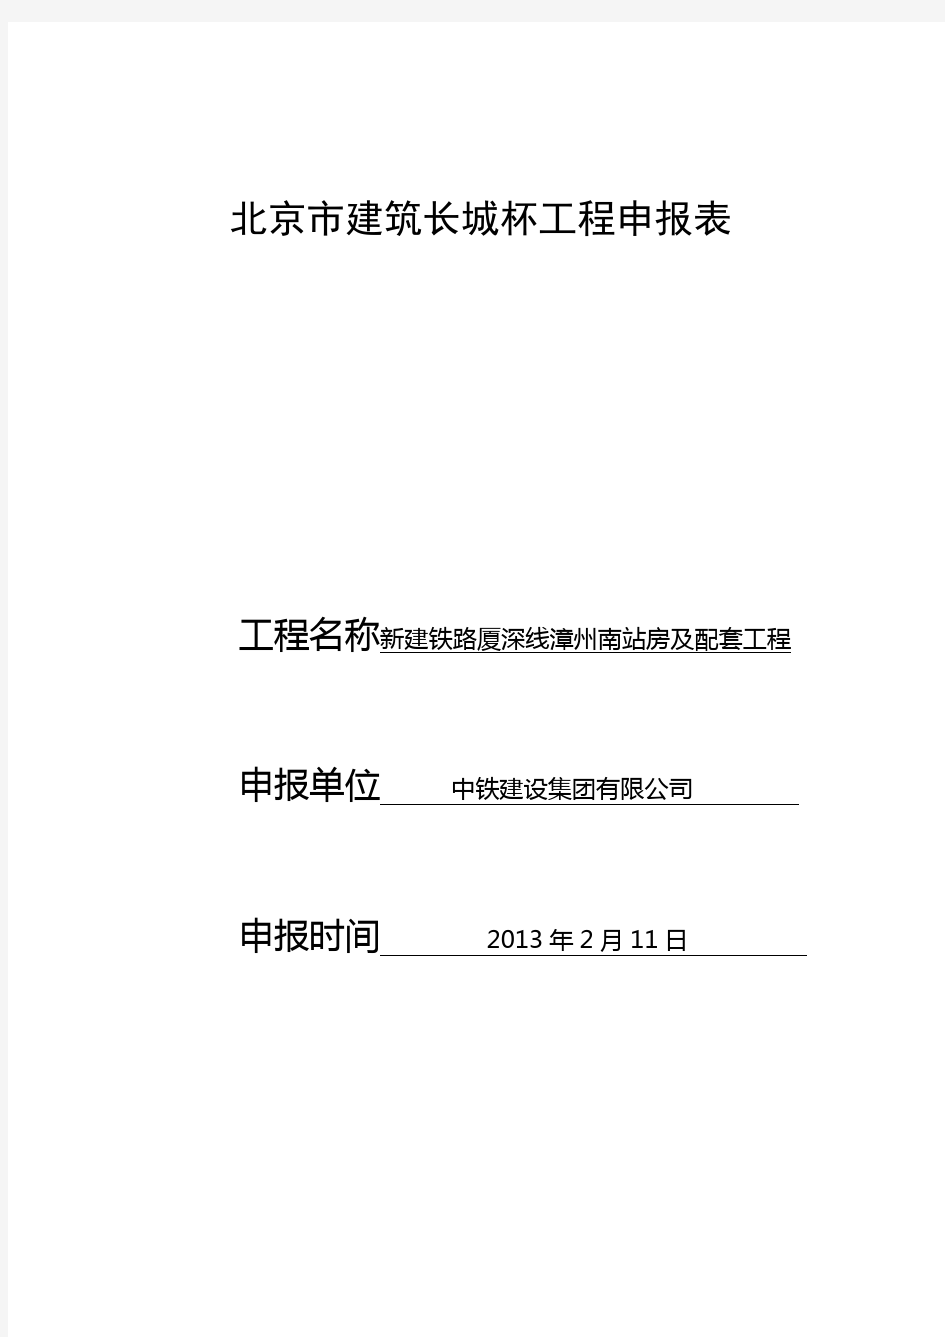 北京市建筑长城杯工程申报表(正式)